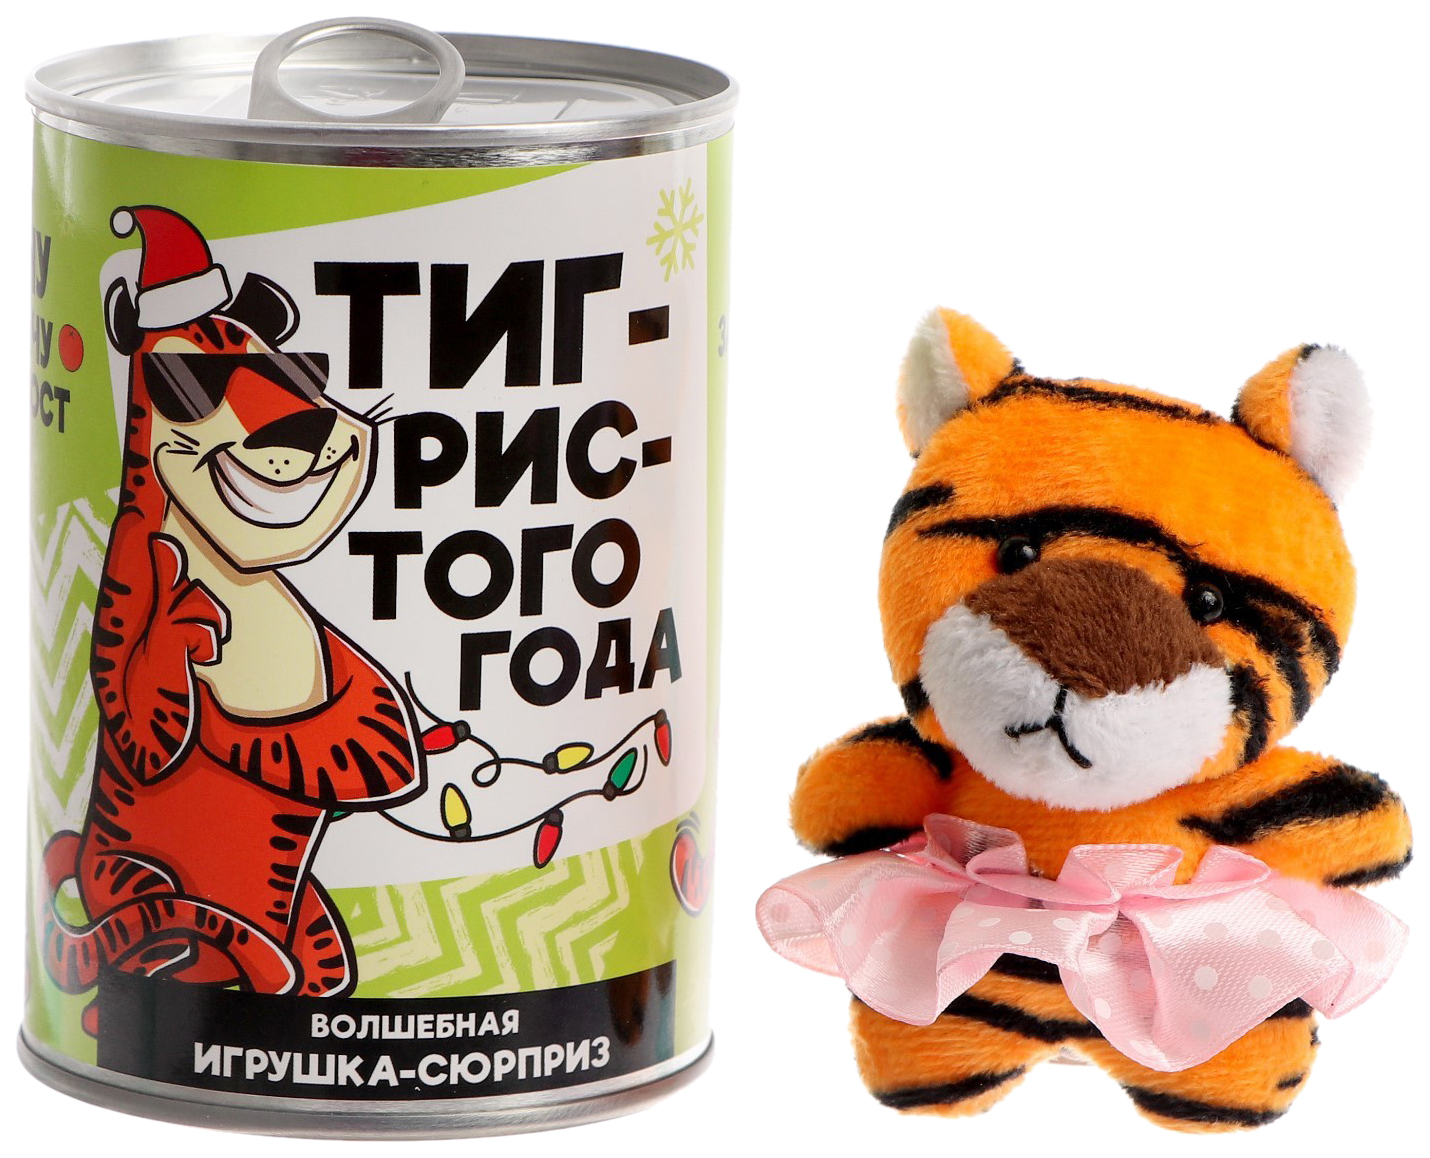 фото Мягкая игрушка дикие животные тигристого года milo toys 7,5 см yume